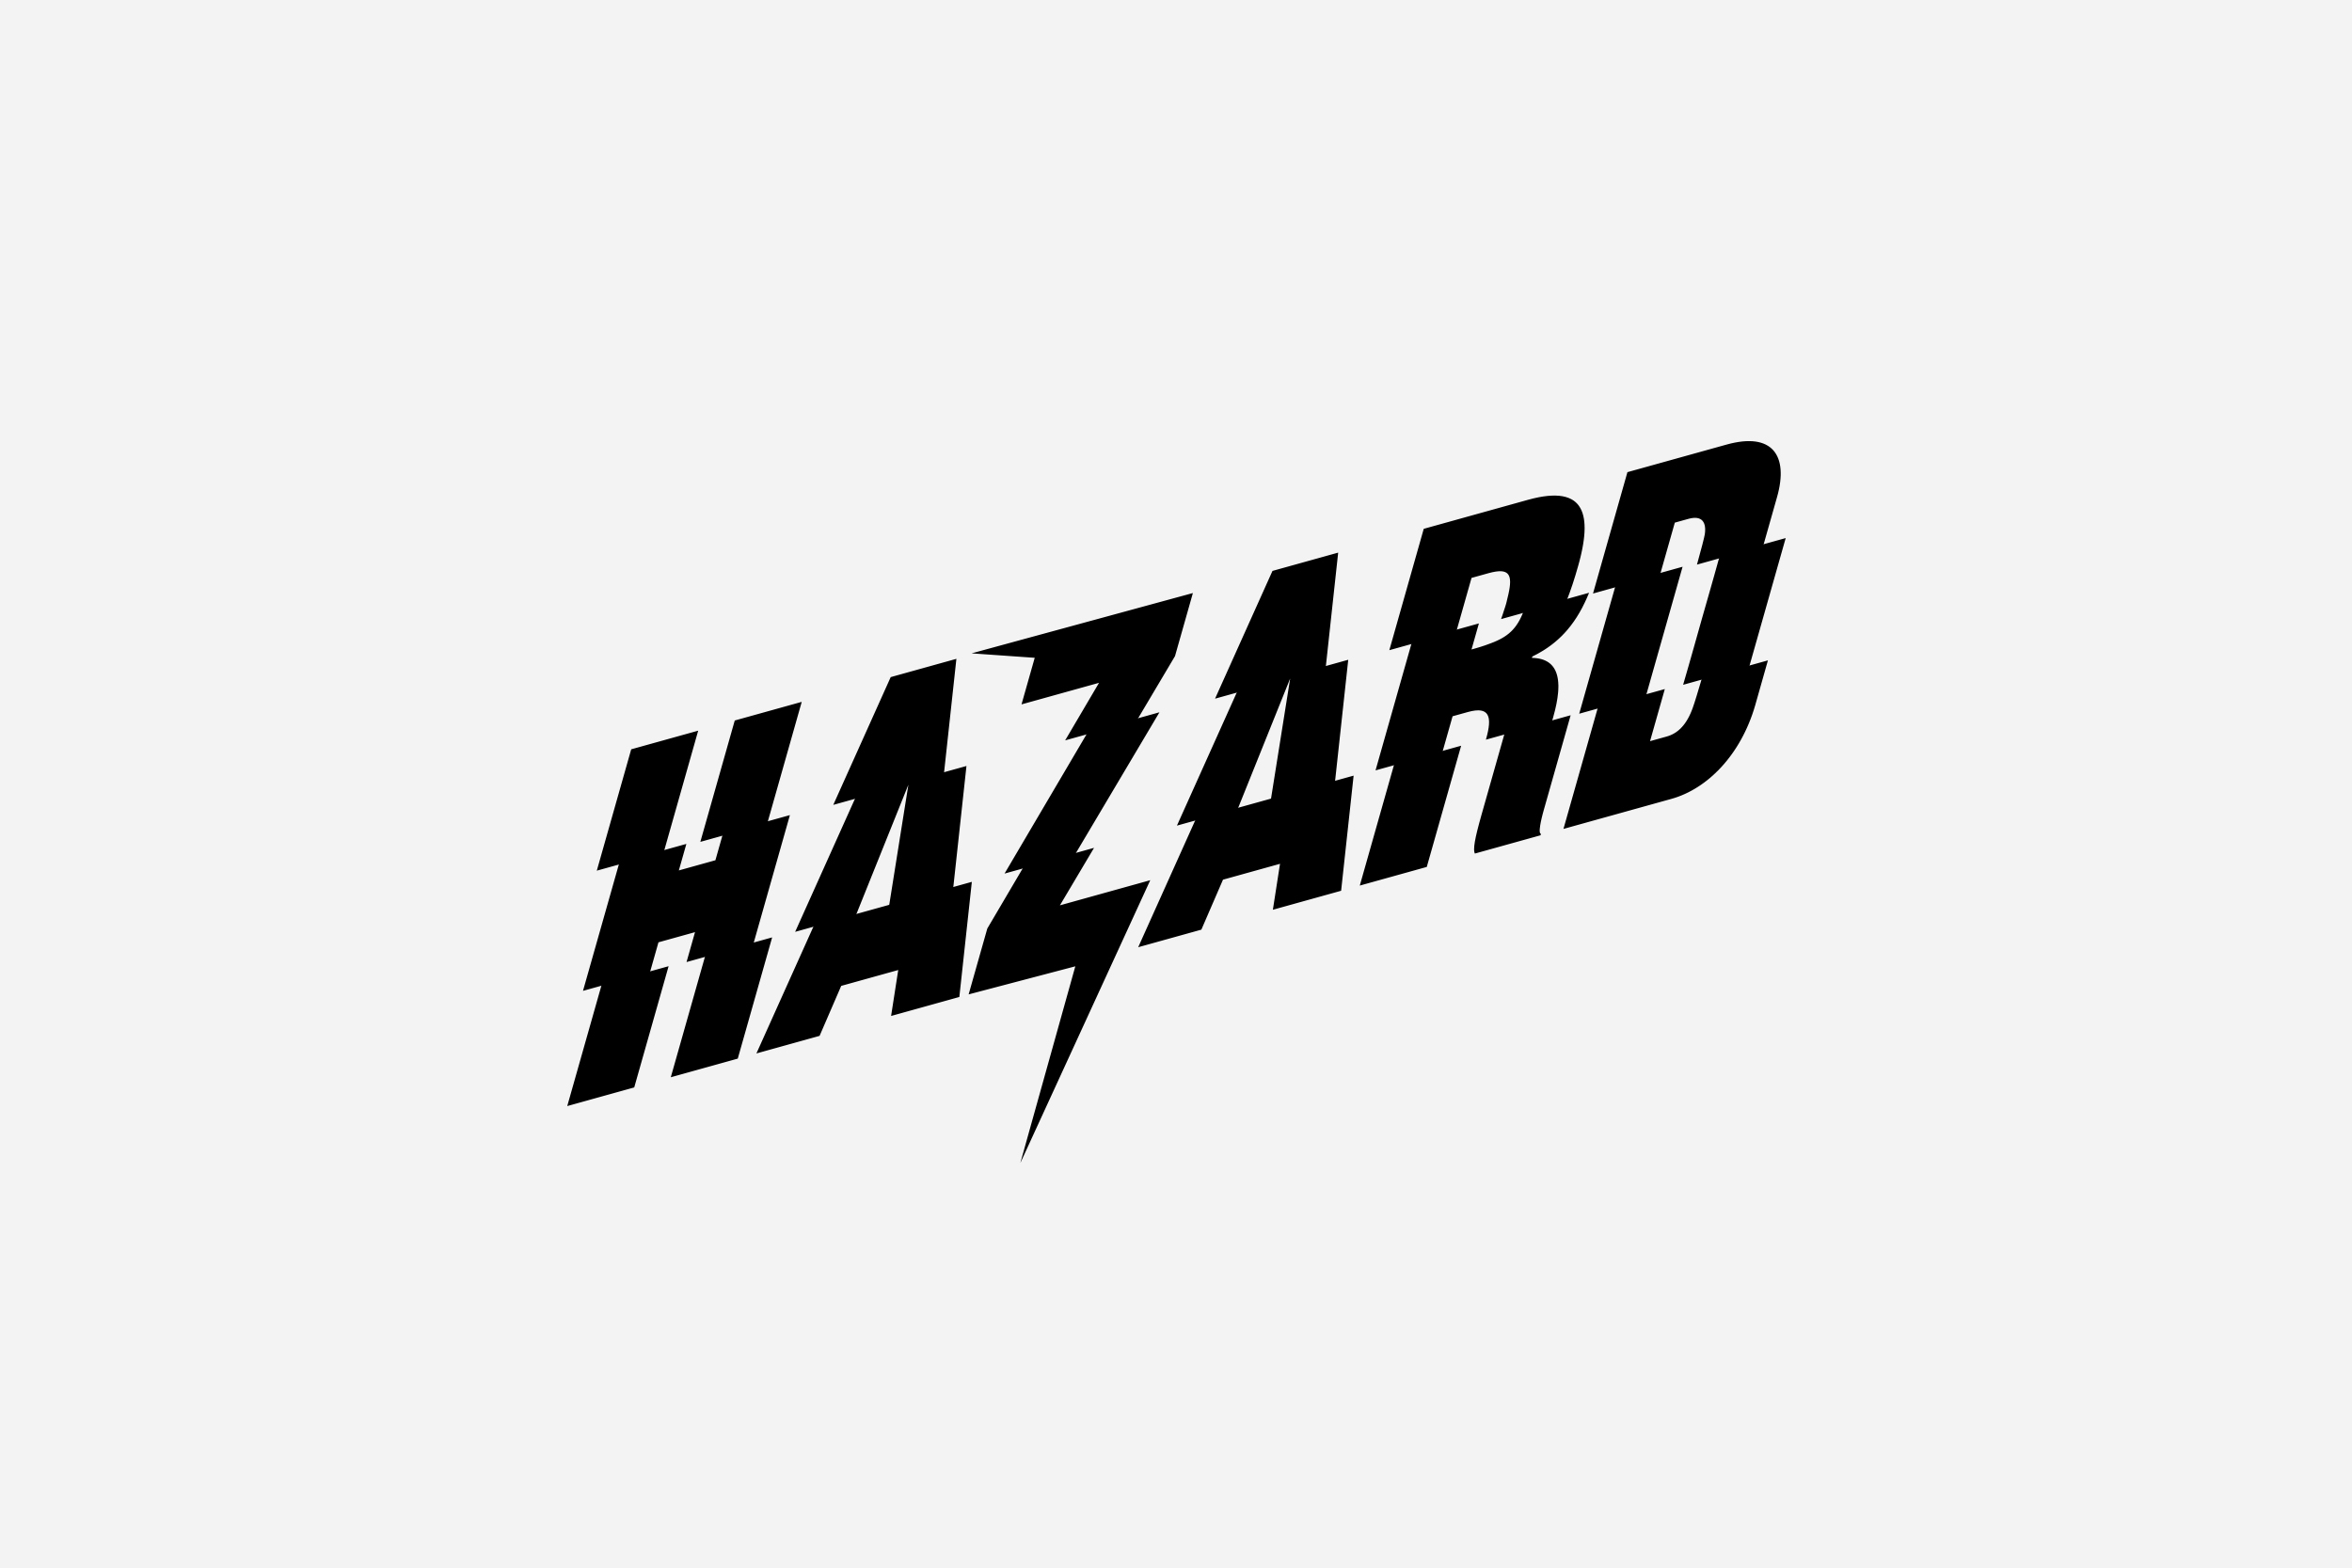 Nike_Hazard_logo_002.jpg